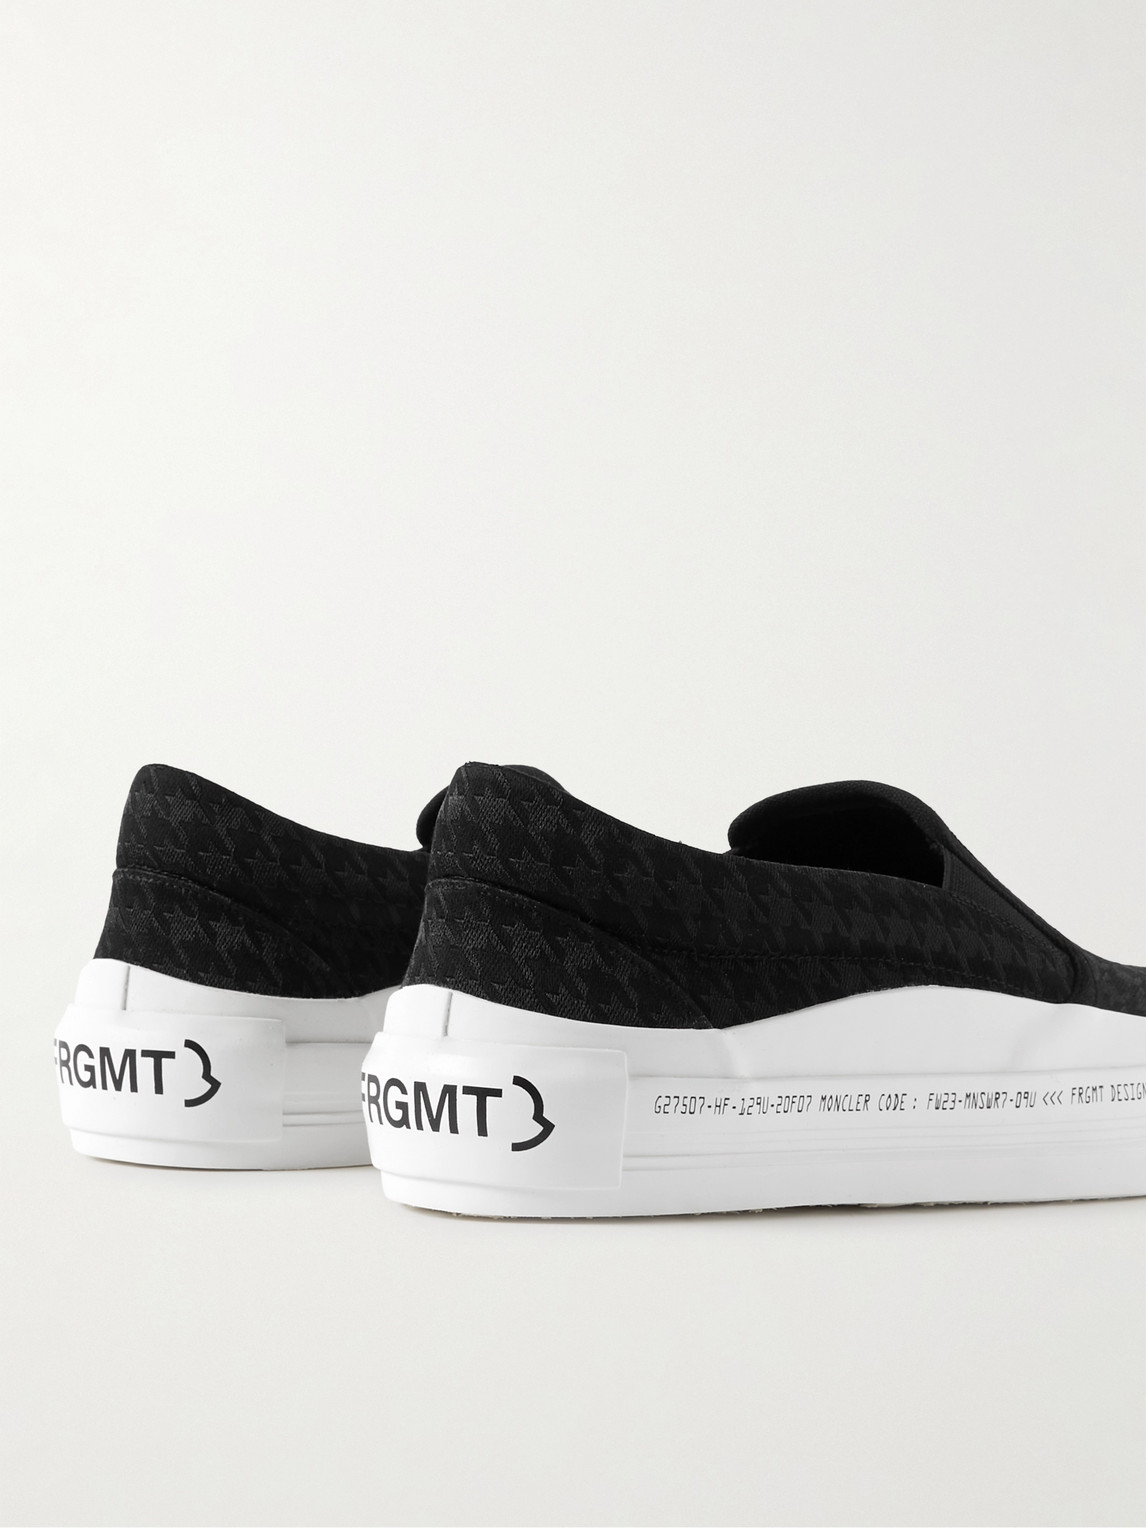 Shop Moncler Genius 7 Moncler Frgmt Hiroshi Fujiwara Jacquard Slip-on Sneakers In Black